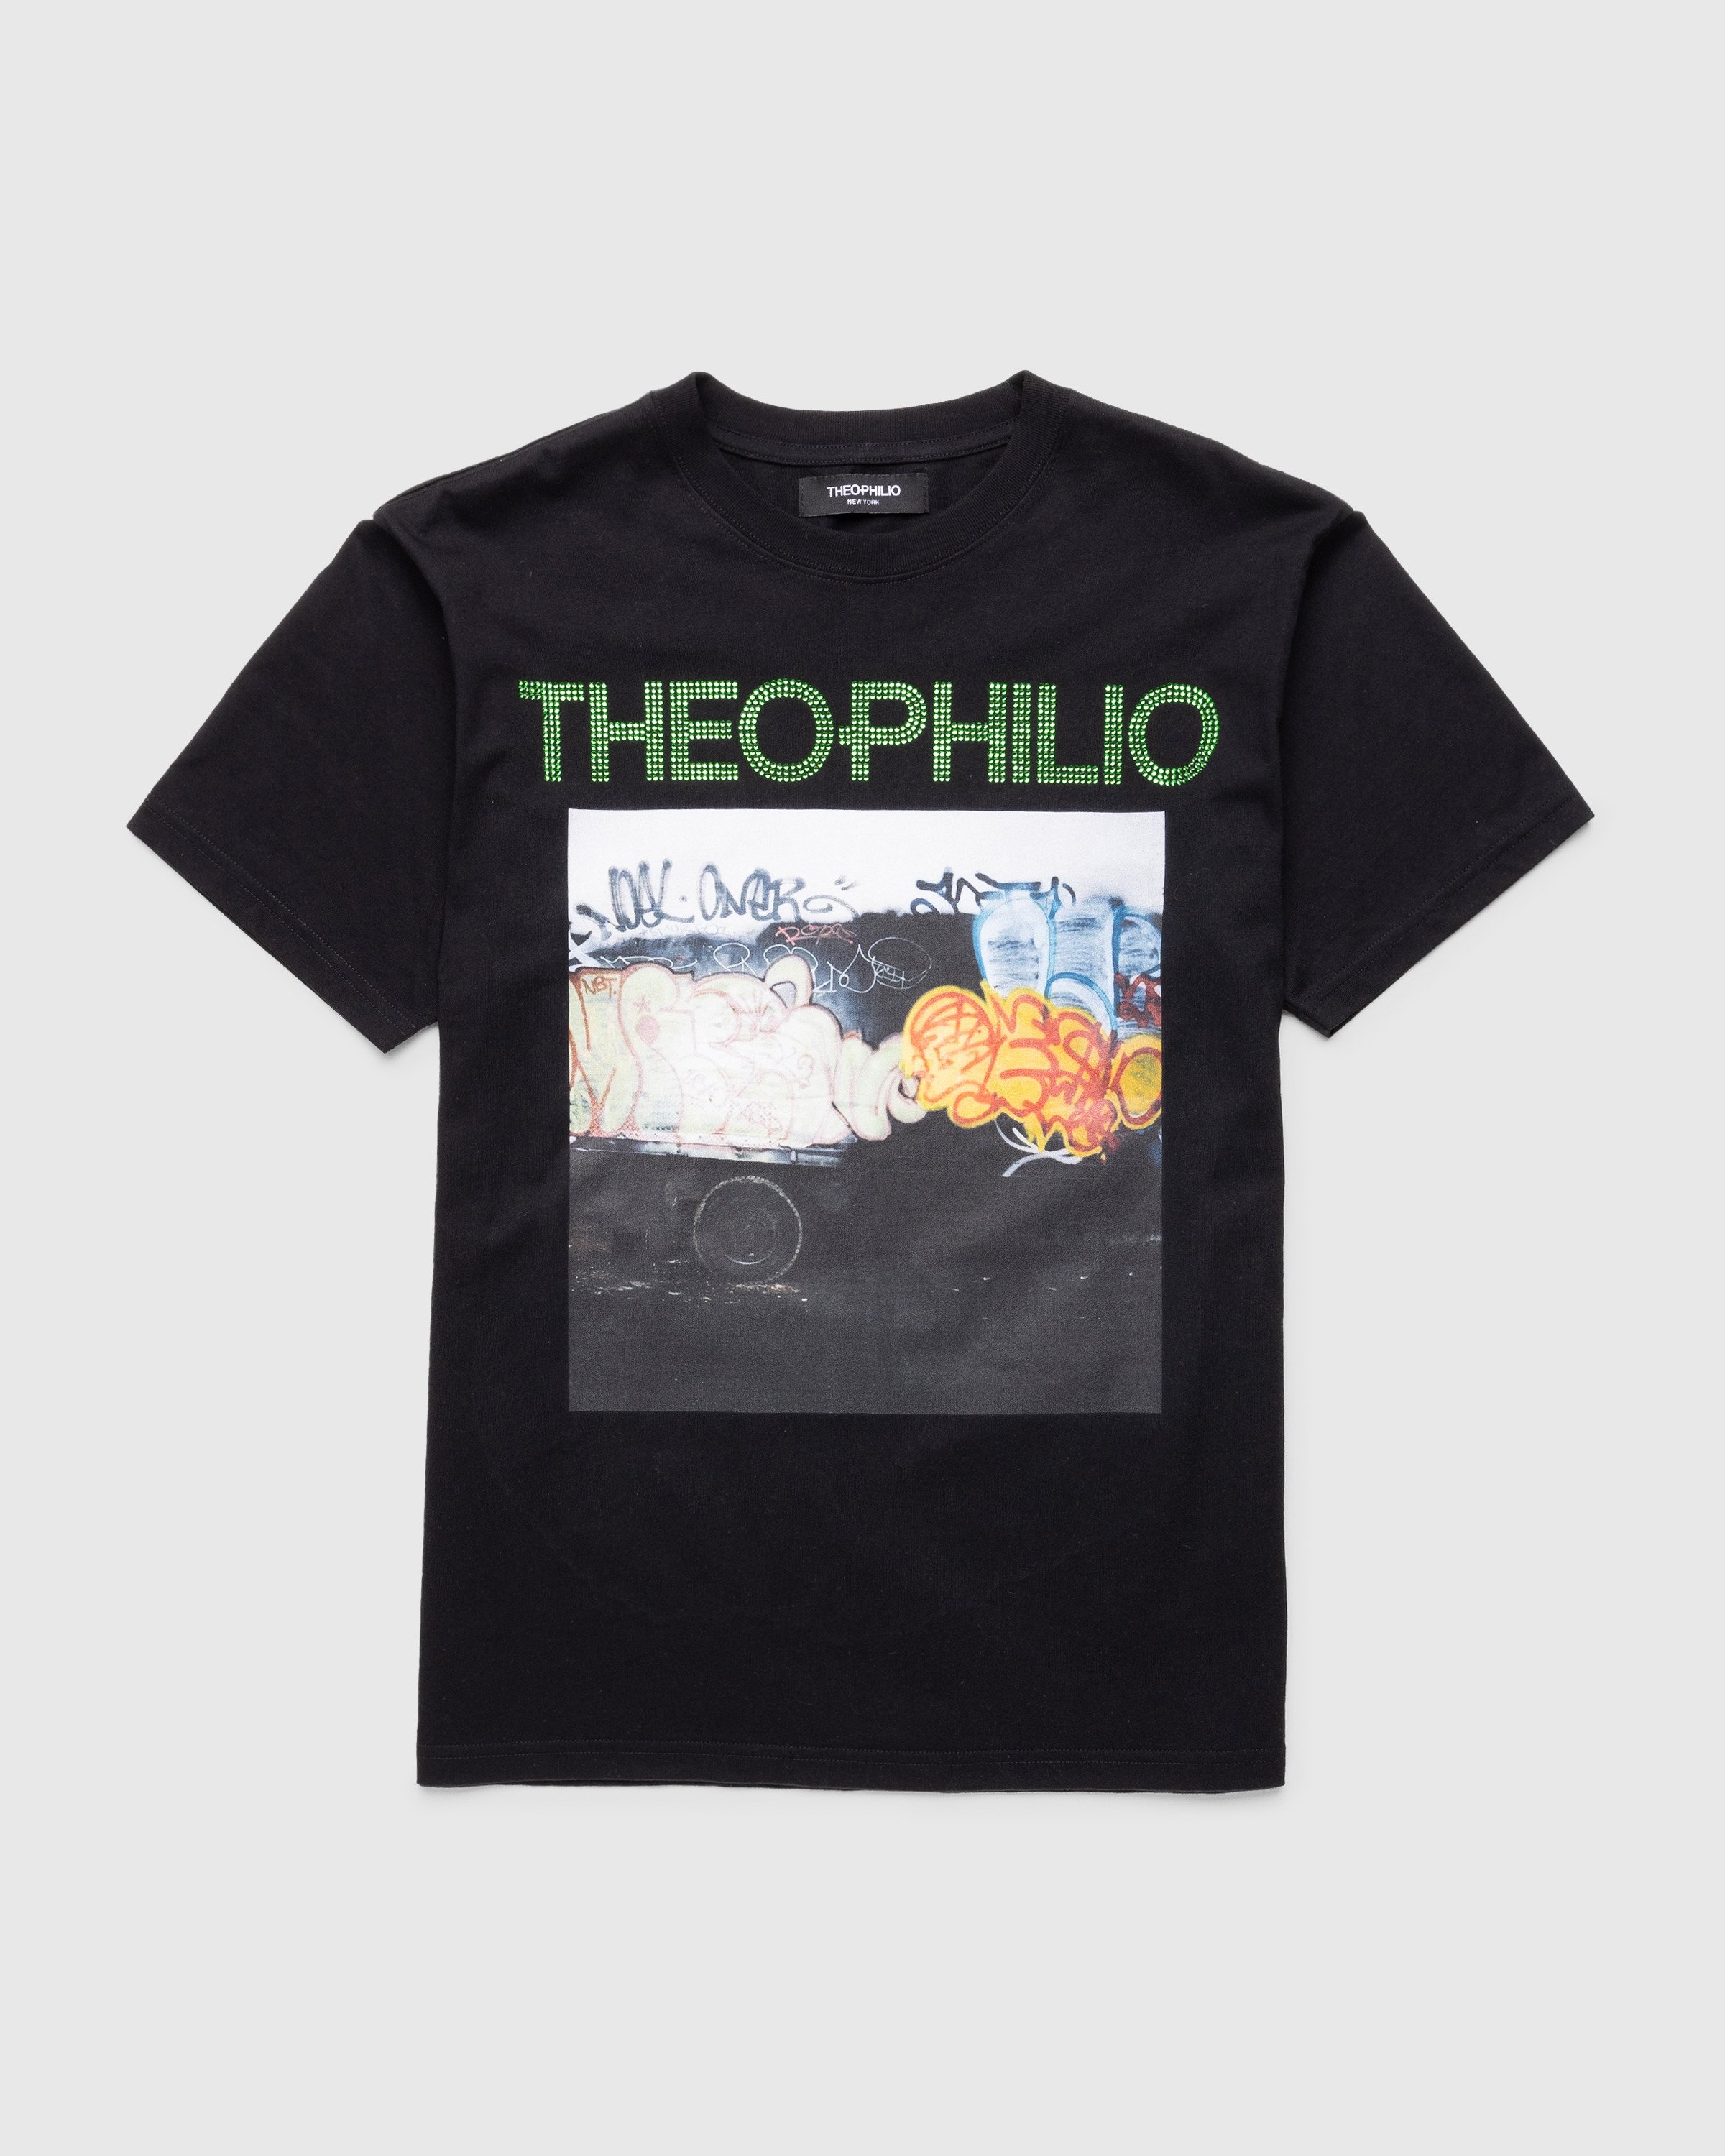 Theophilio x Highsnobiety - Black T-Shirt - Clothing - Black - Image 1